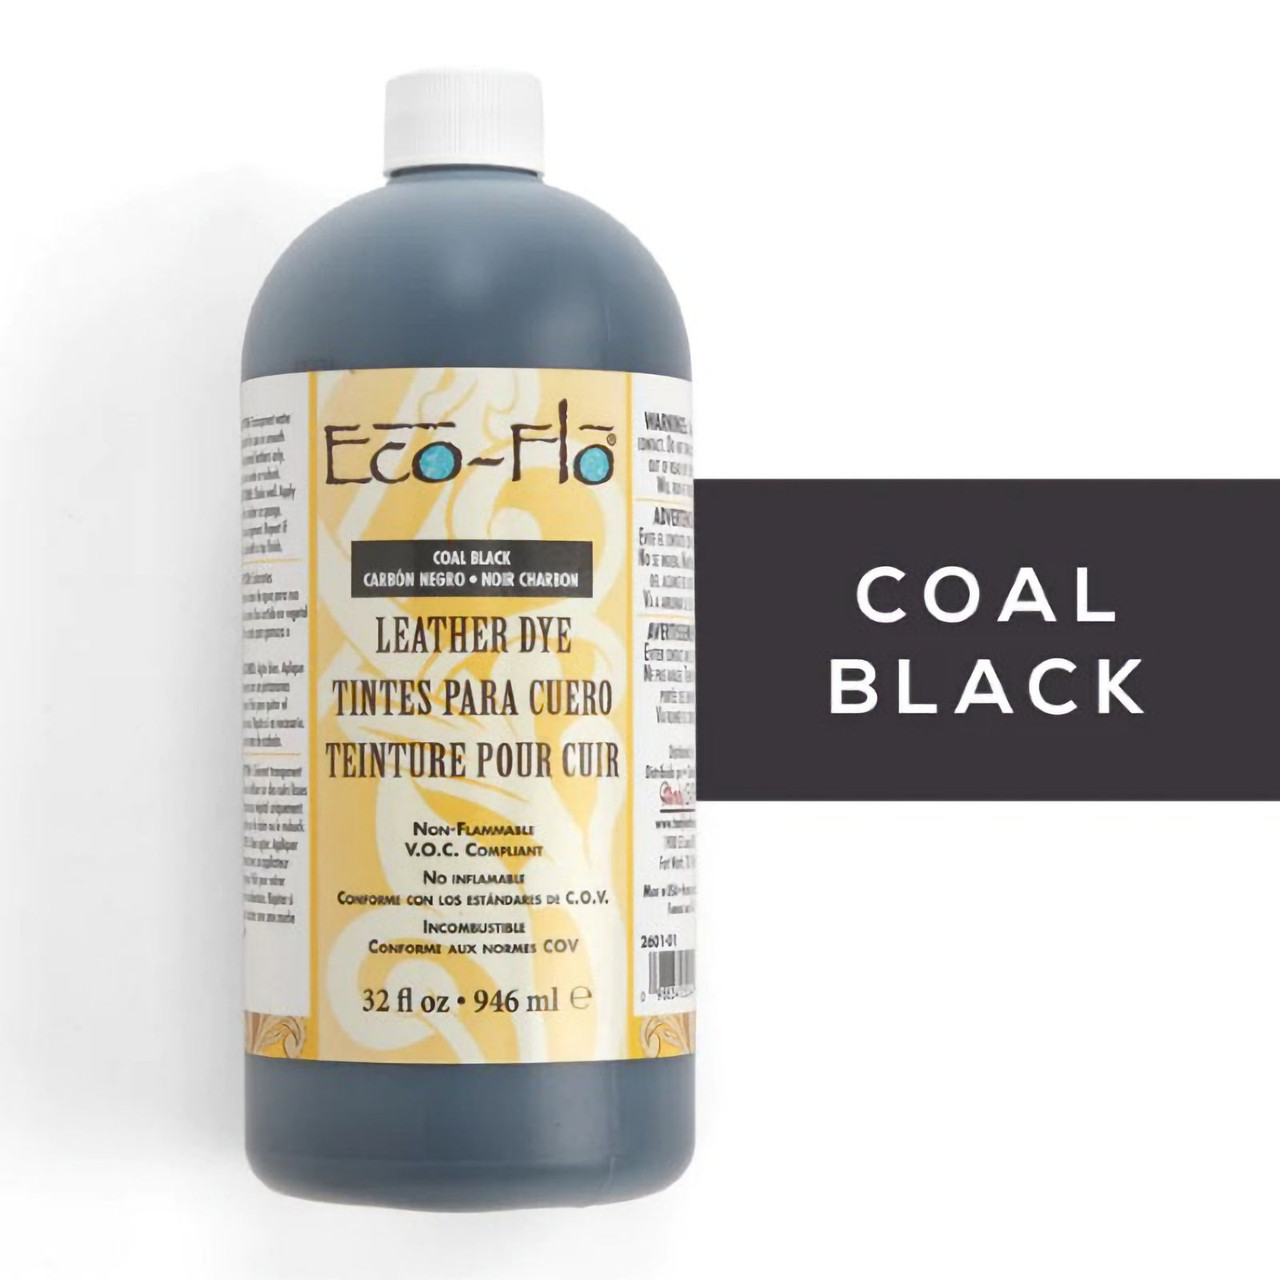 Black leather dye in 32 oz. bottle.